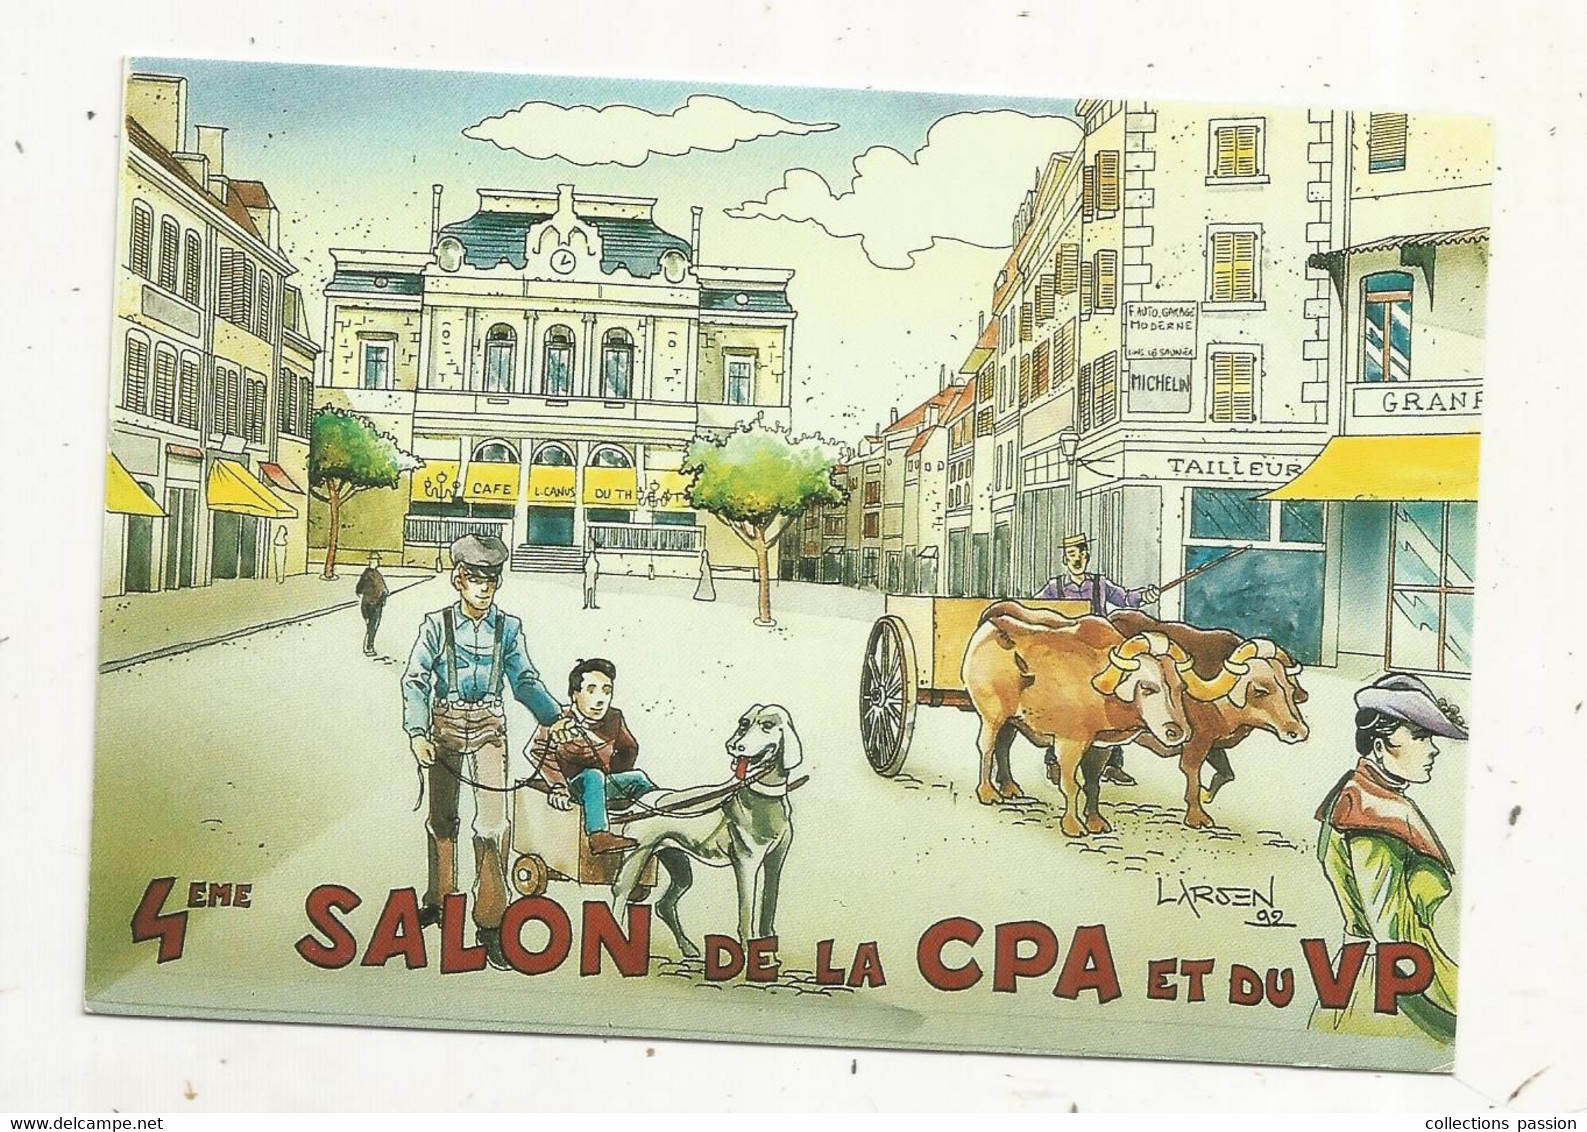 Cp, Bourses & Salons De Collections, 4 E SALON DE LA  CPA ET DU VP, Lons Le Saunier,1993, Illustrateur: LARSEN, Vierge - Collector Fairs & Bourses